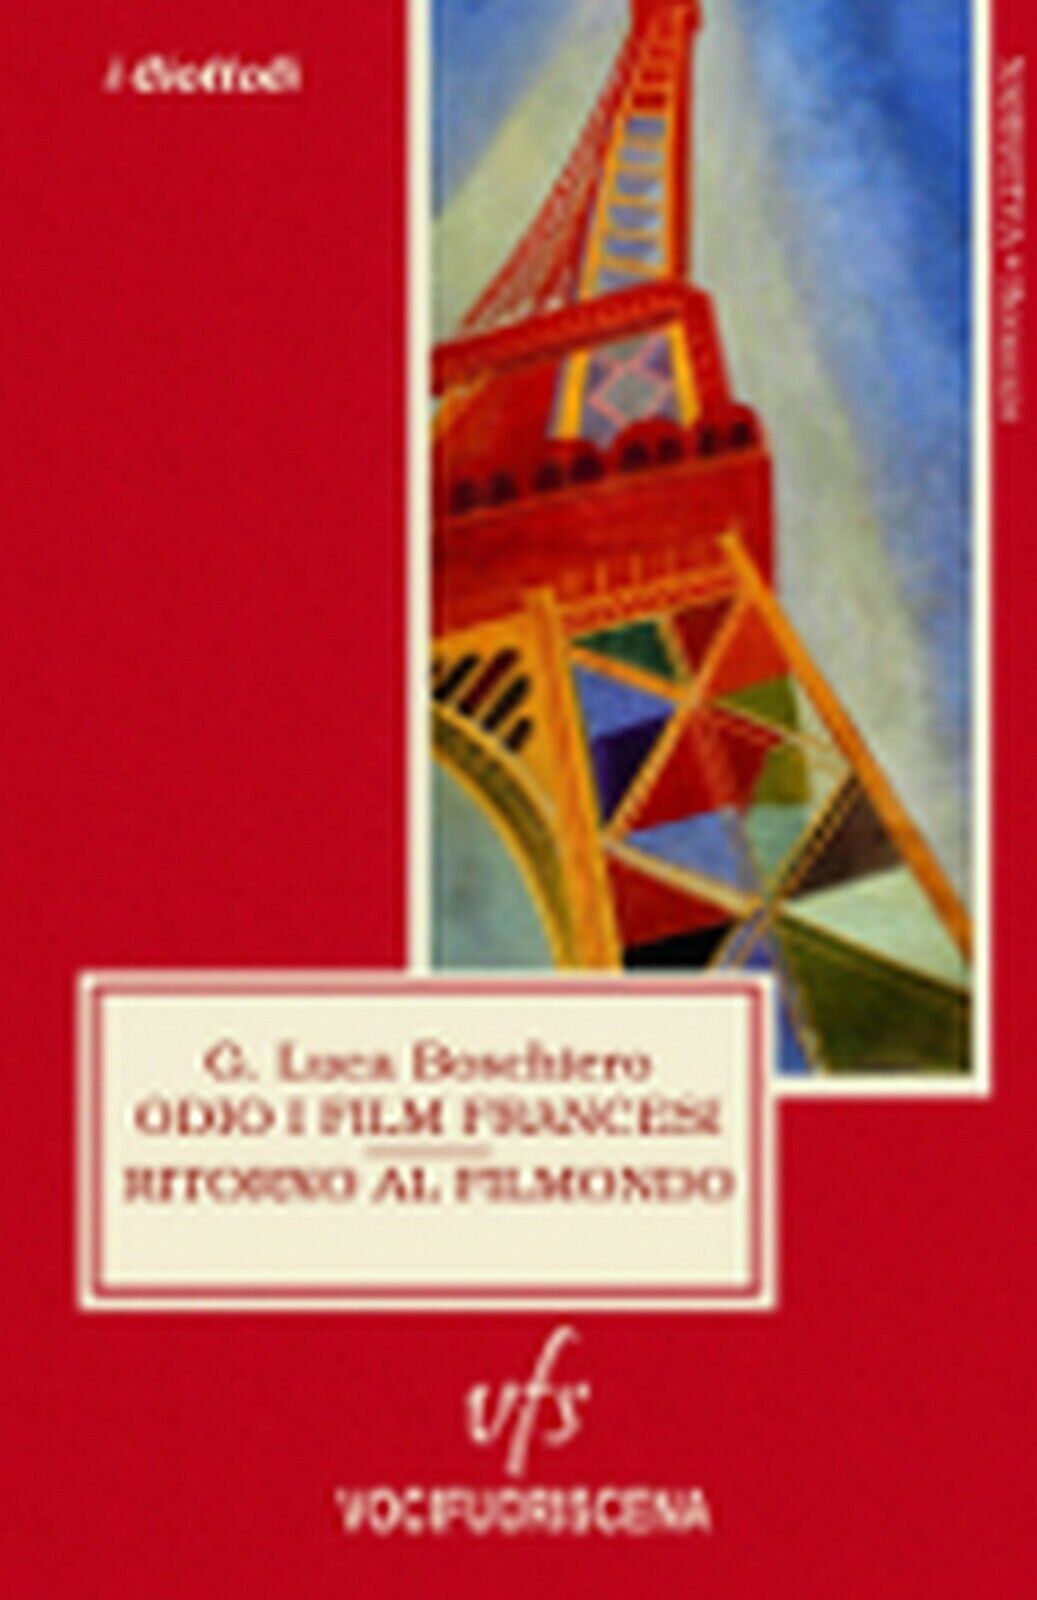 ODIO I FILM FRANCESI RITORNO AL FILMONDO  di G. Luca Boschiero,  2018,  Vocifuor